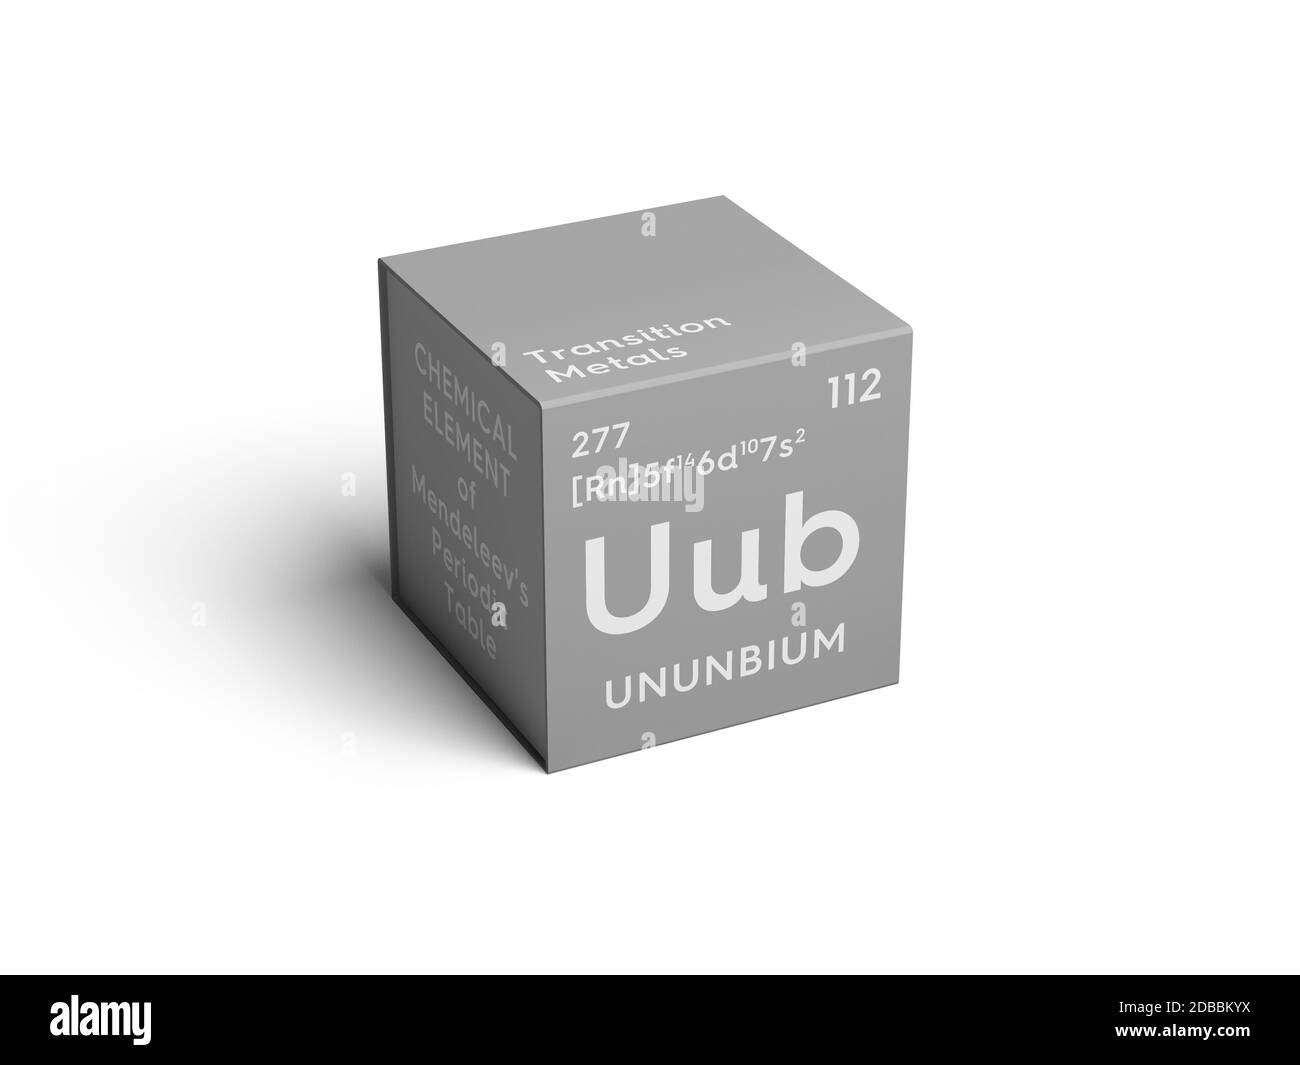 Ununbium. Transition metals. Chemical Element of Mendeleev's Periodic Table. Ununbium in square cube creative concept. 3D illustration. Stock Photo